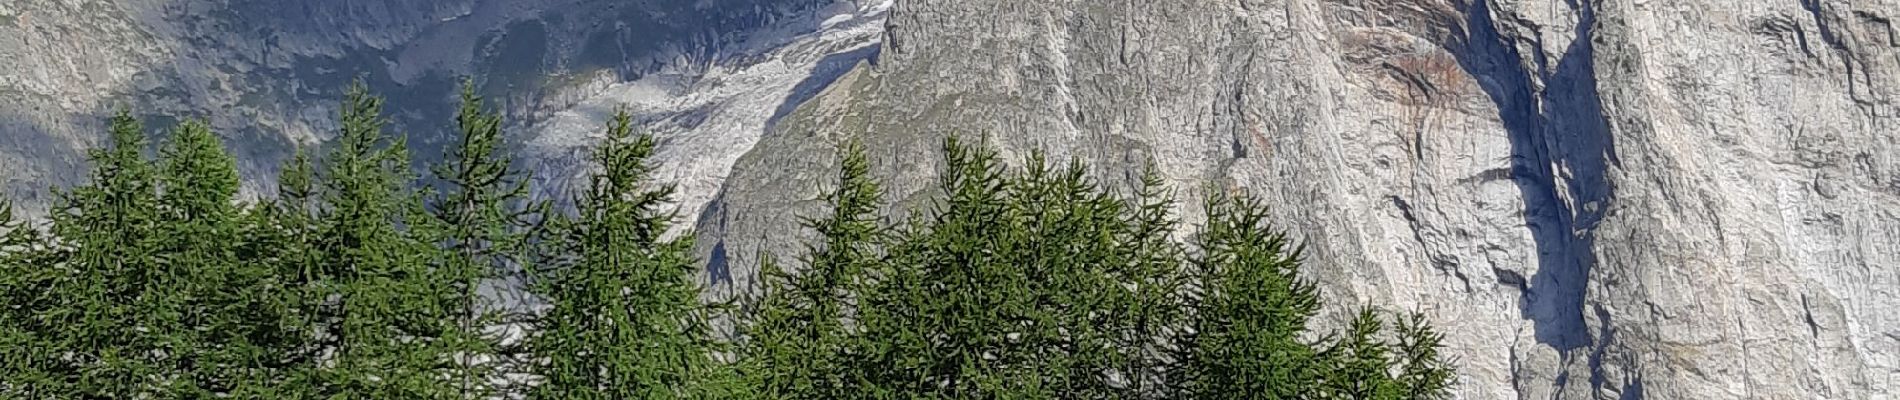 Percorso Marcia Courmayeur - étape monte Bianco mottets - Photo